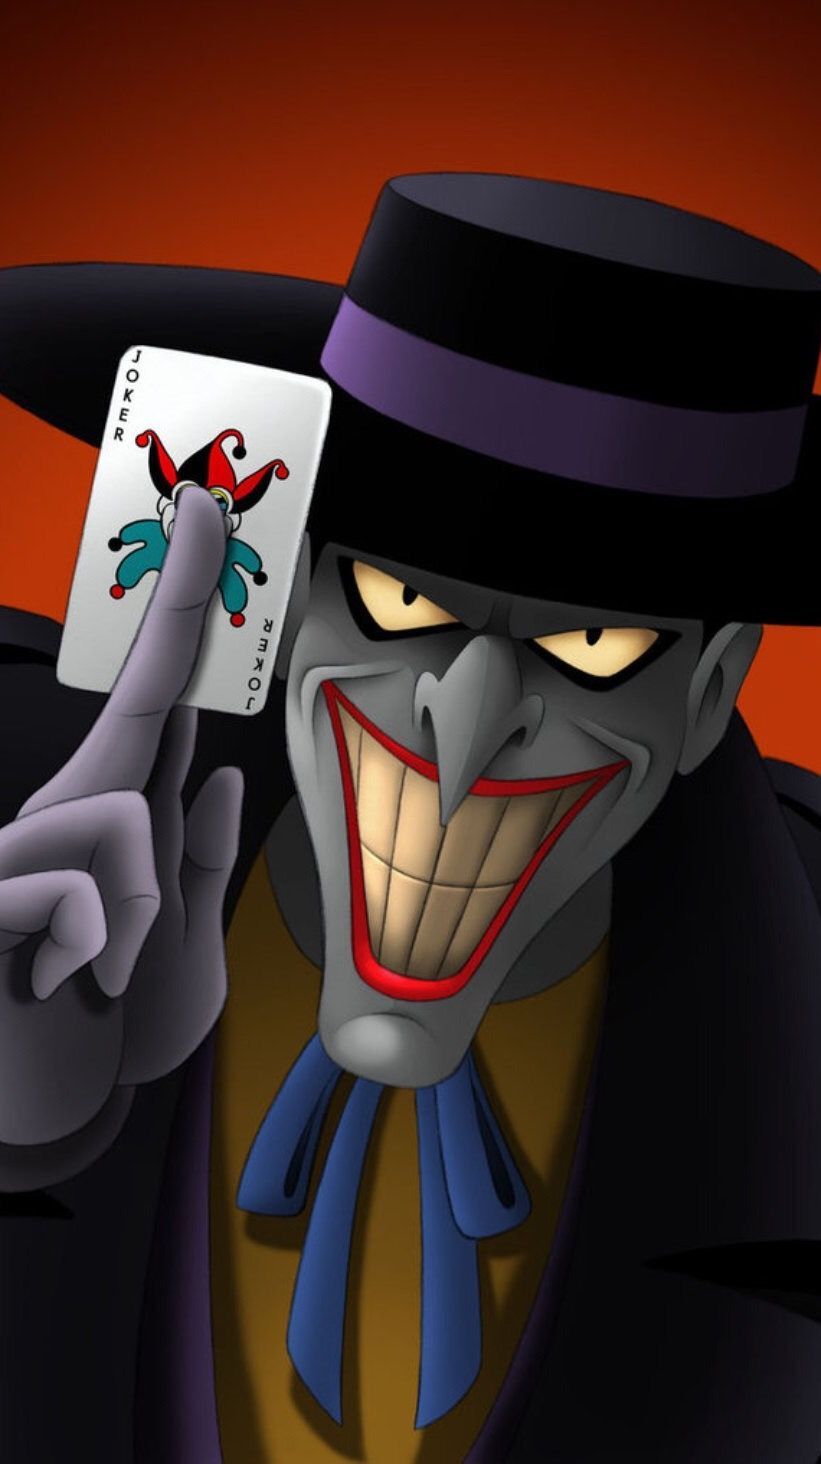 DC) Joker. Joker wallpaper, Joker animated, Joker drawings